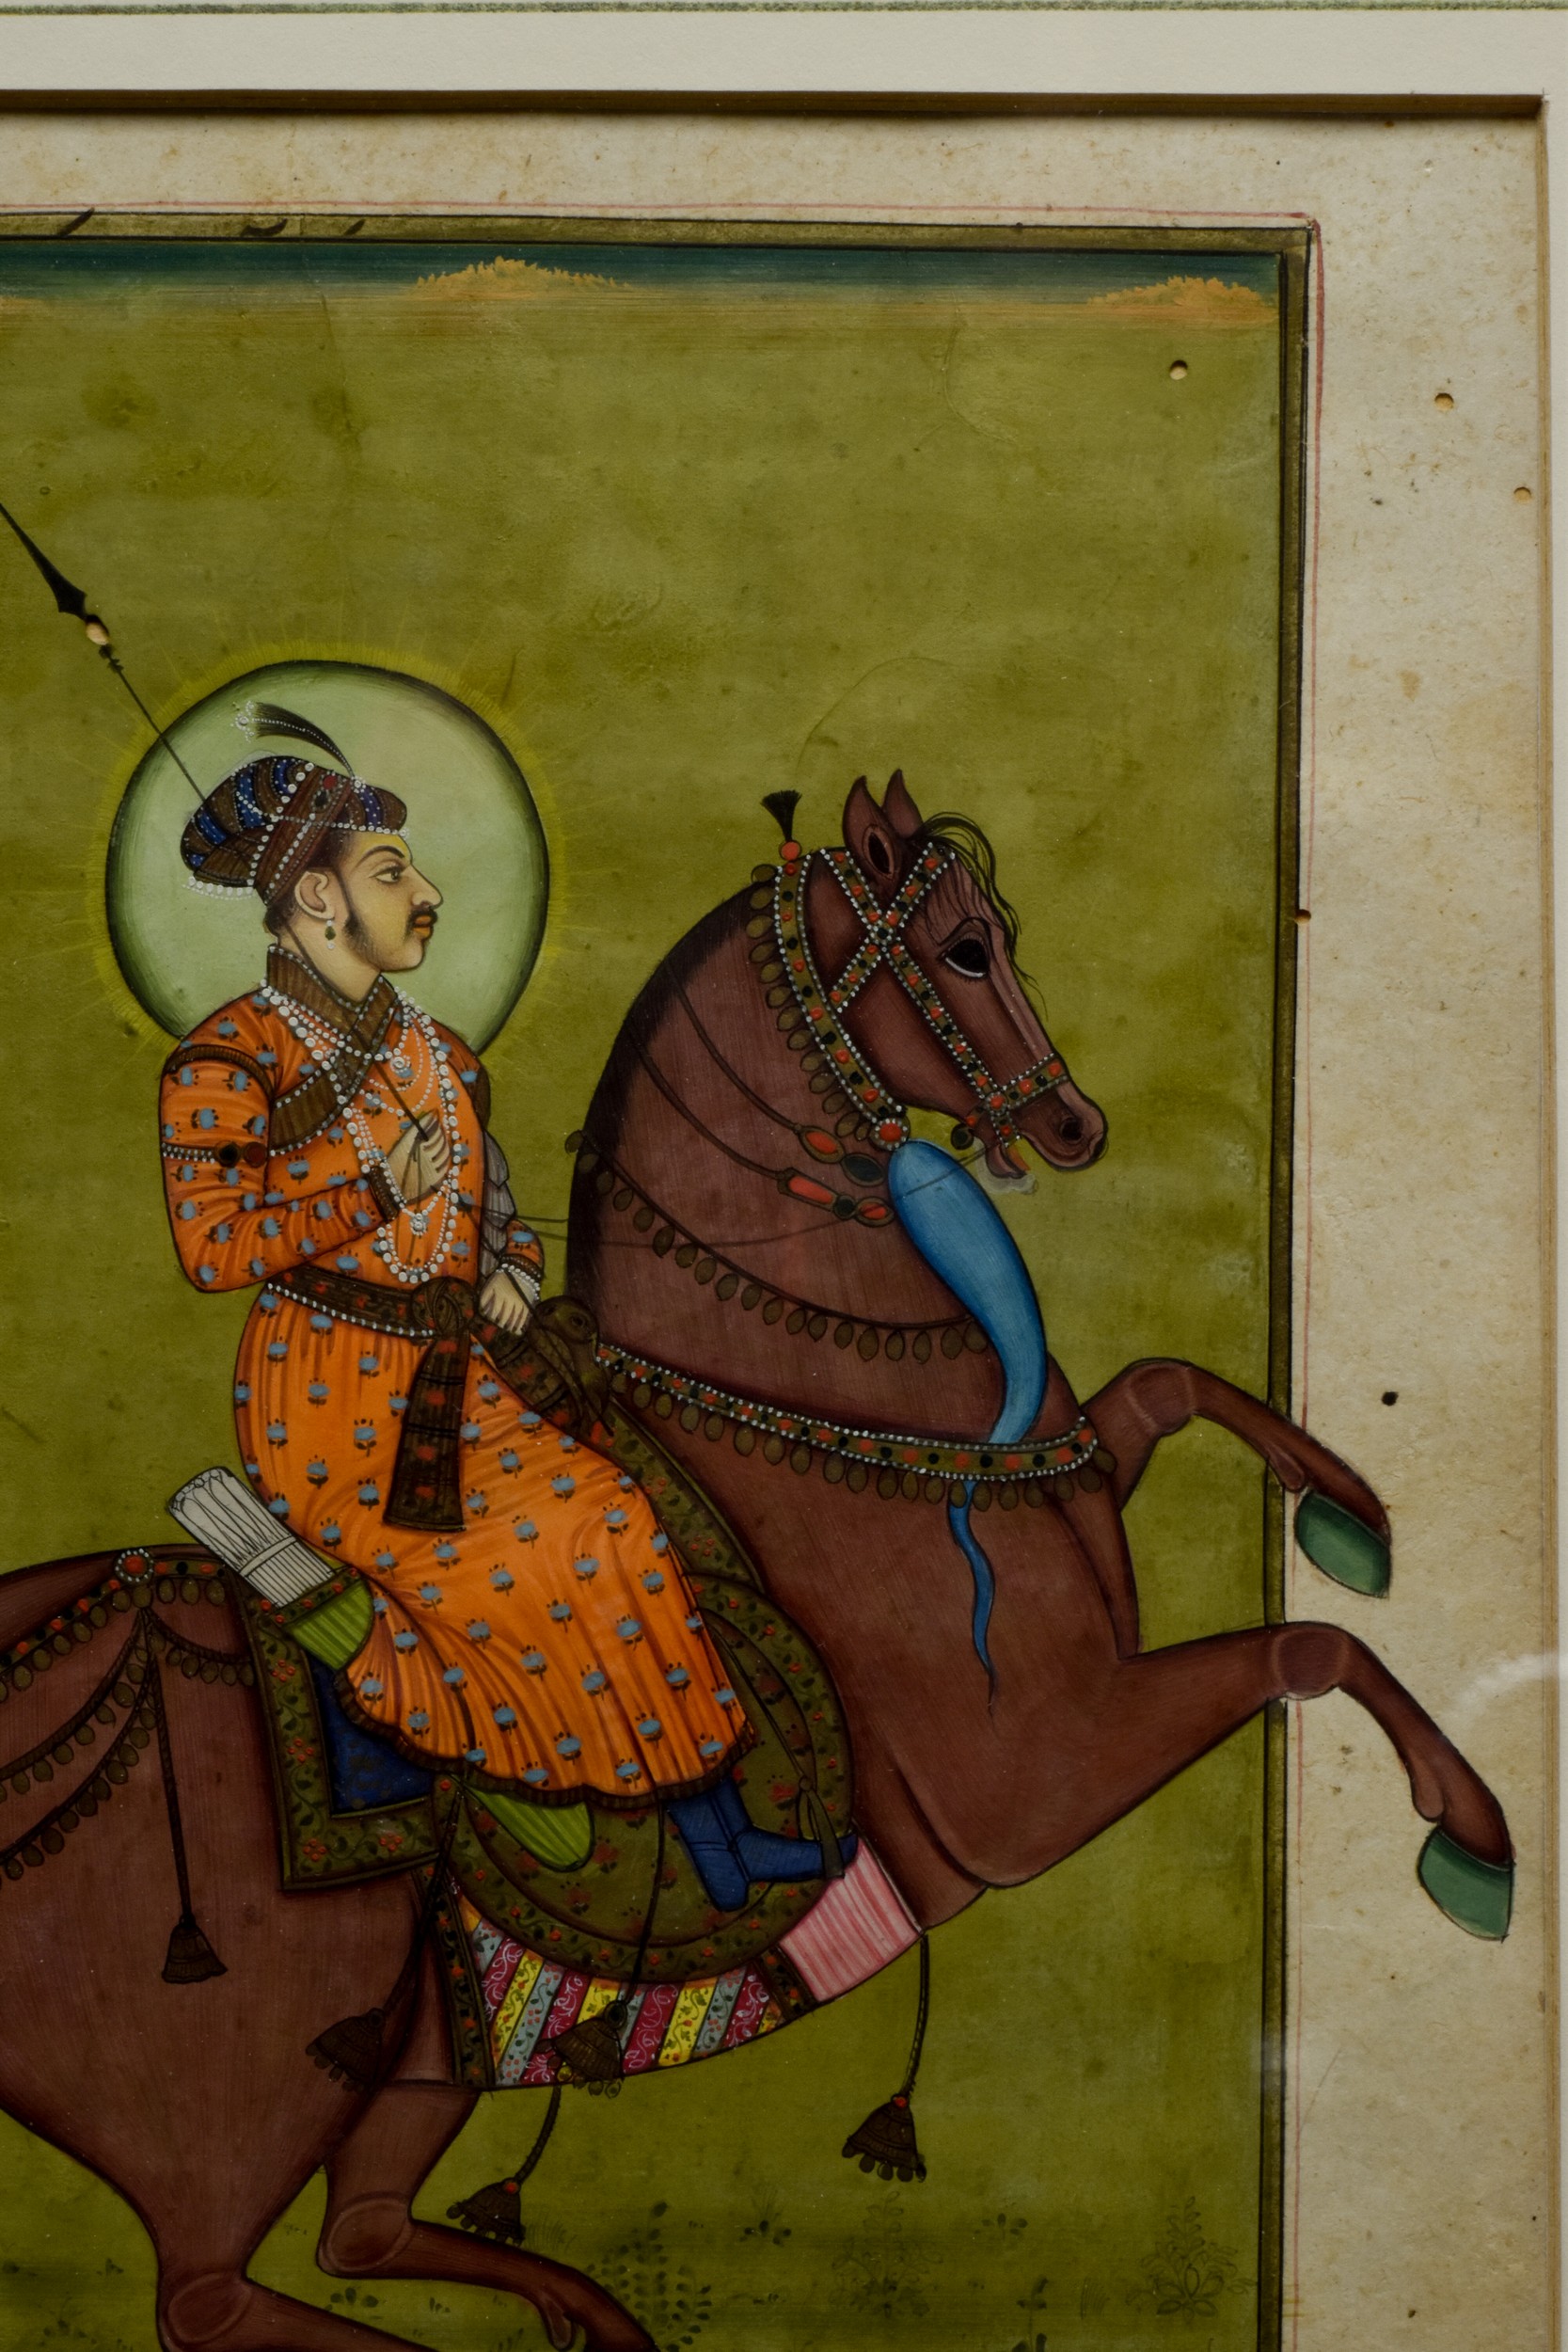 PORTRAIT OF A MUGHAL RULER ON HORSEBACK - Image 5 of 5